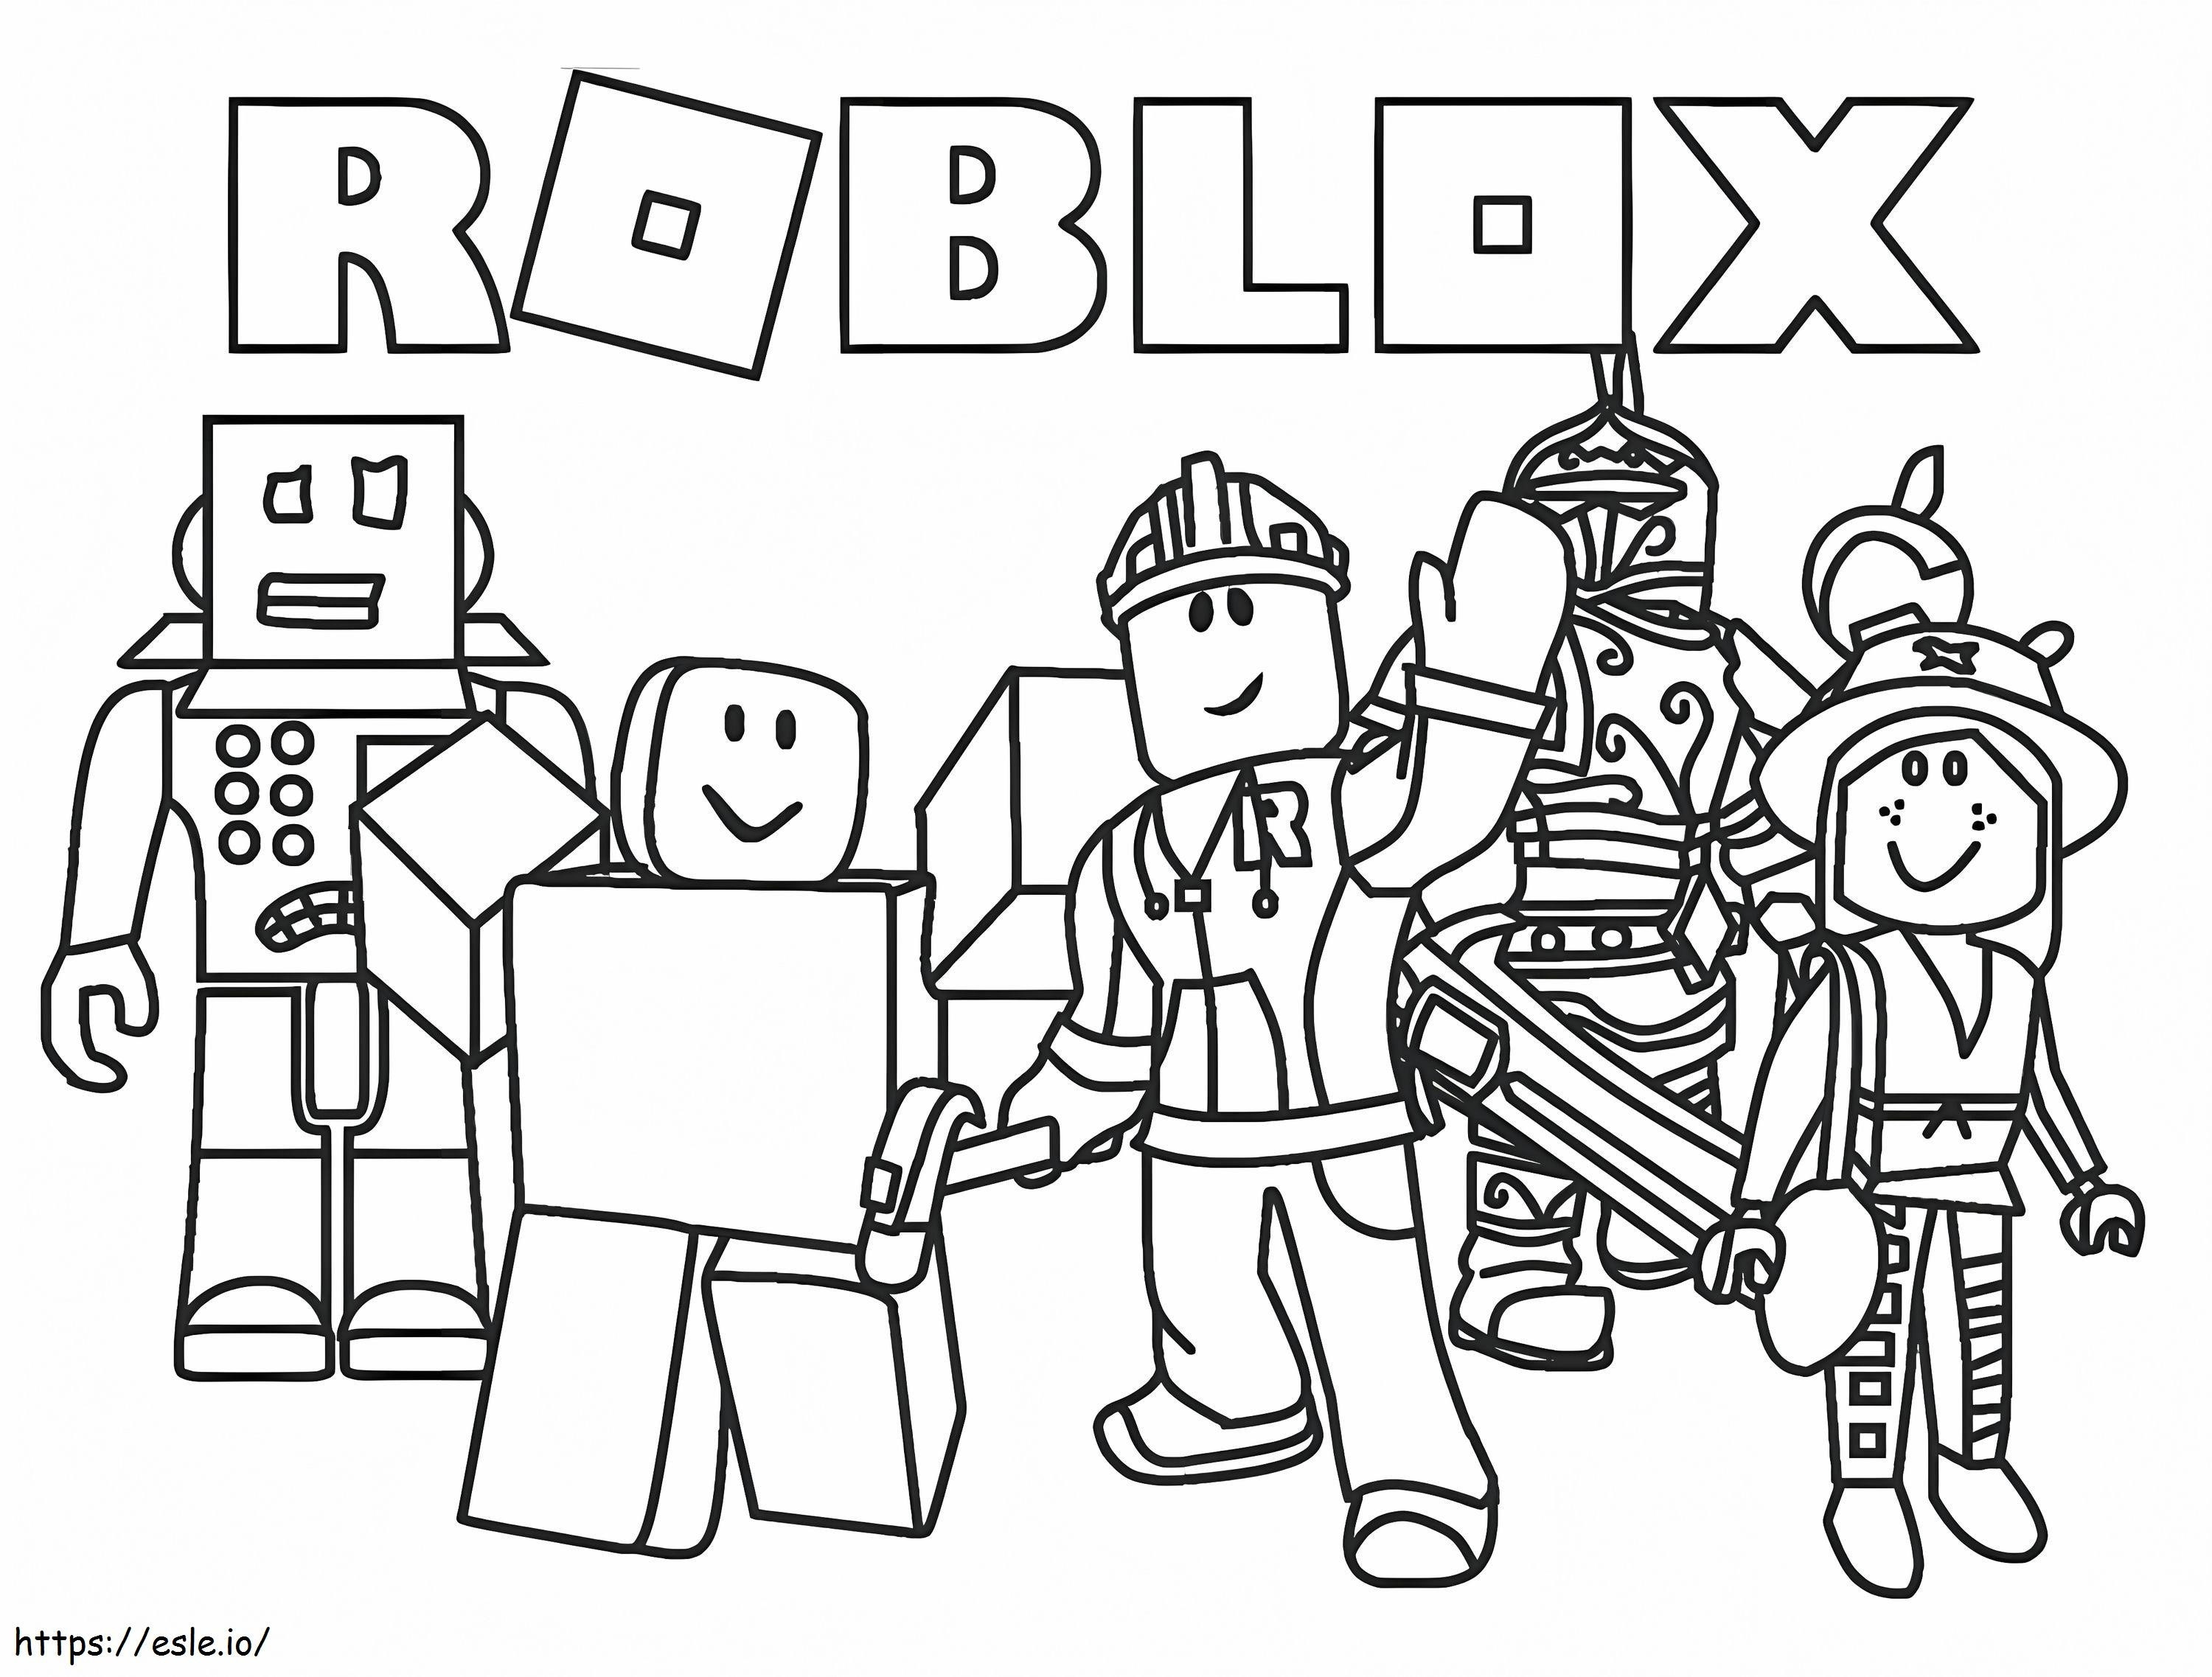 Personagens Roblox para colorir